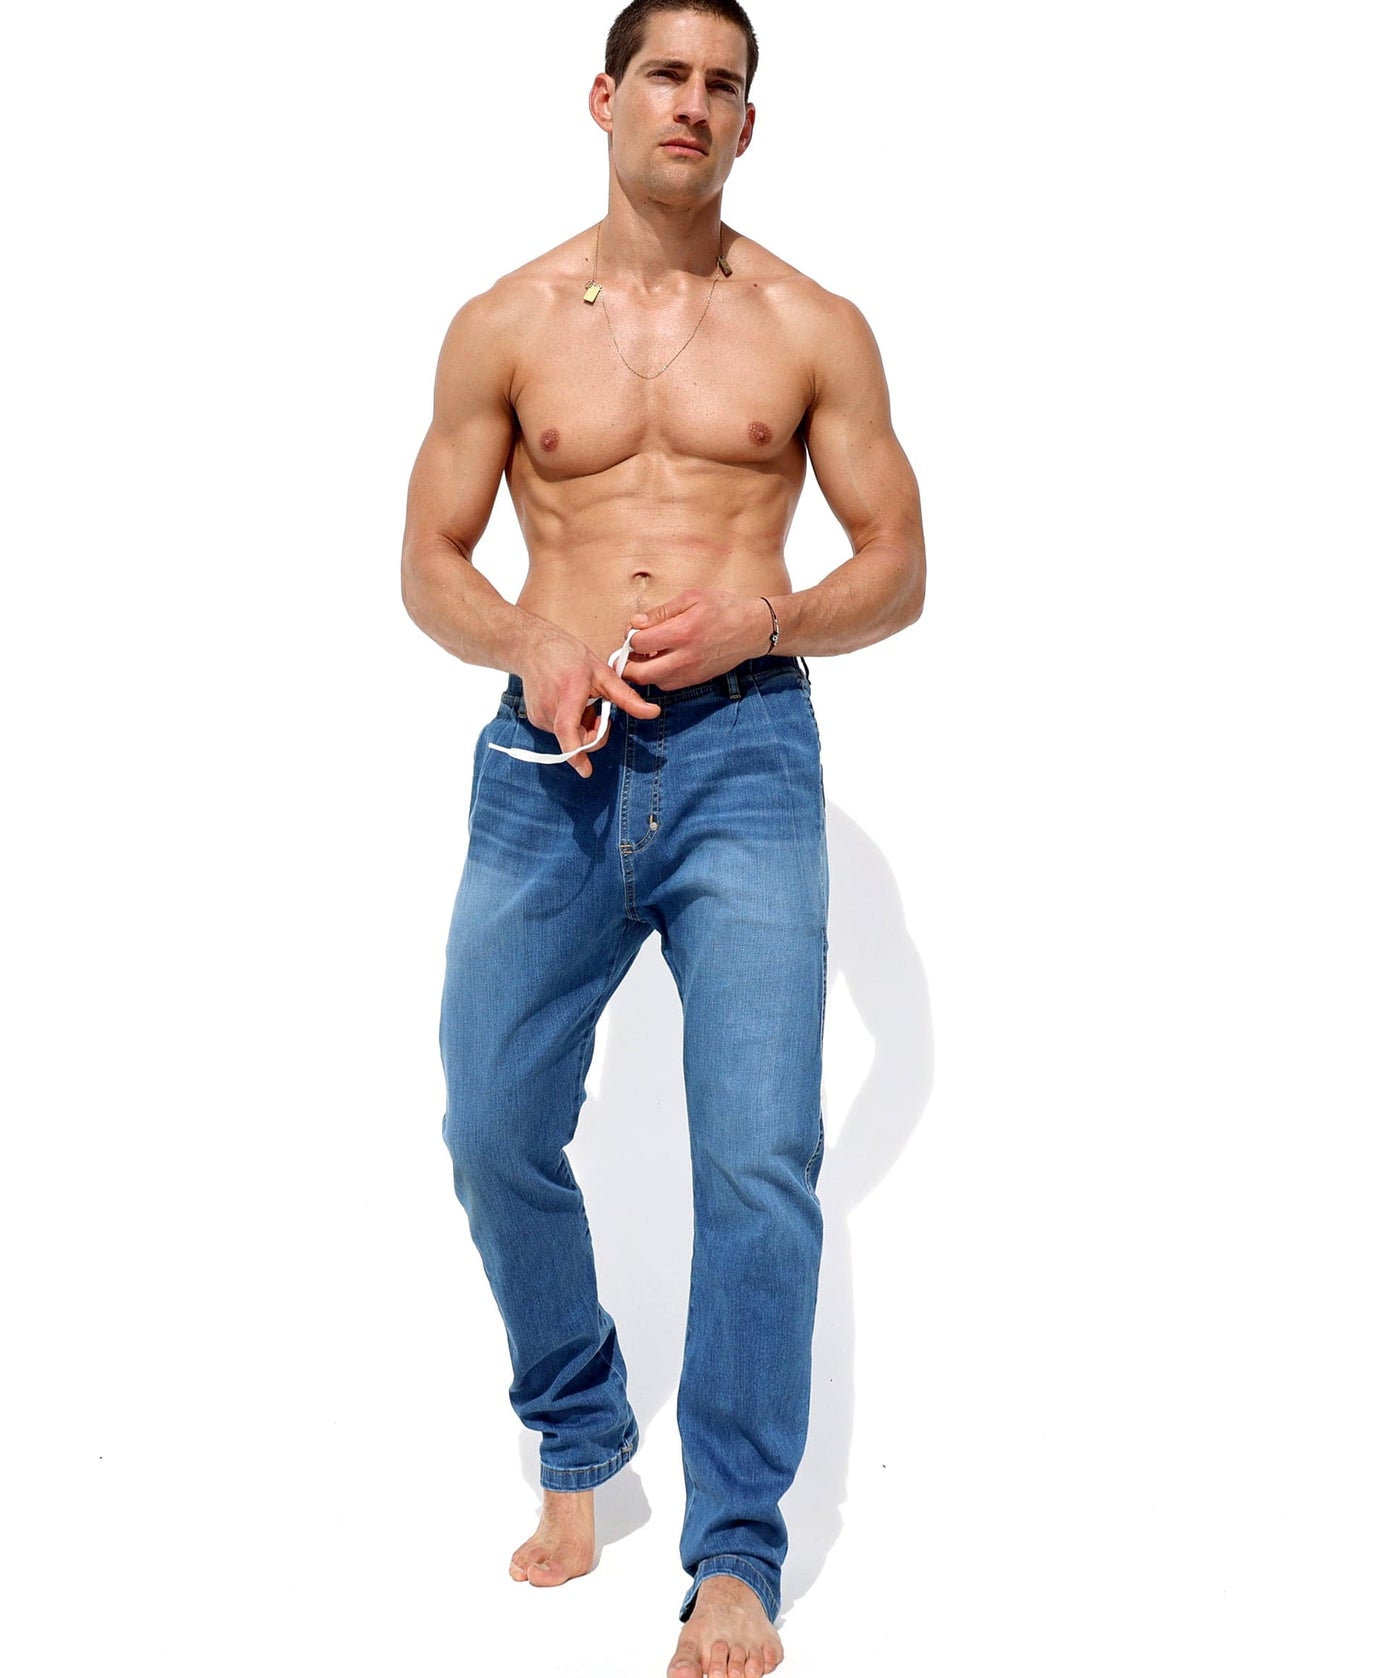 Rufskin Underwear UK : Men's Jeans, Sportswear, Leggings & Swimwear